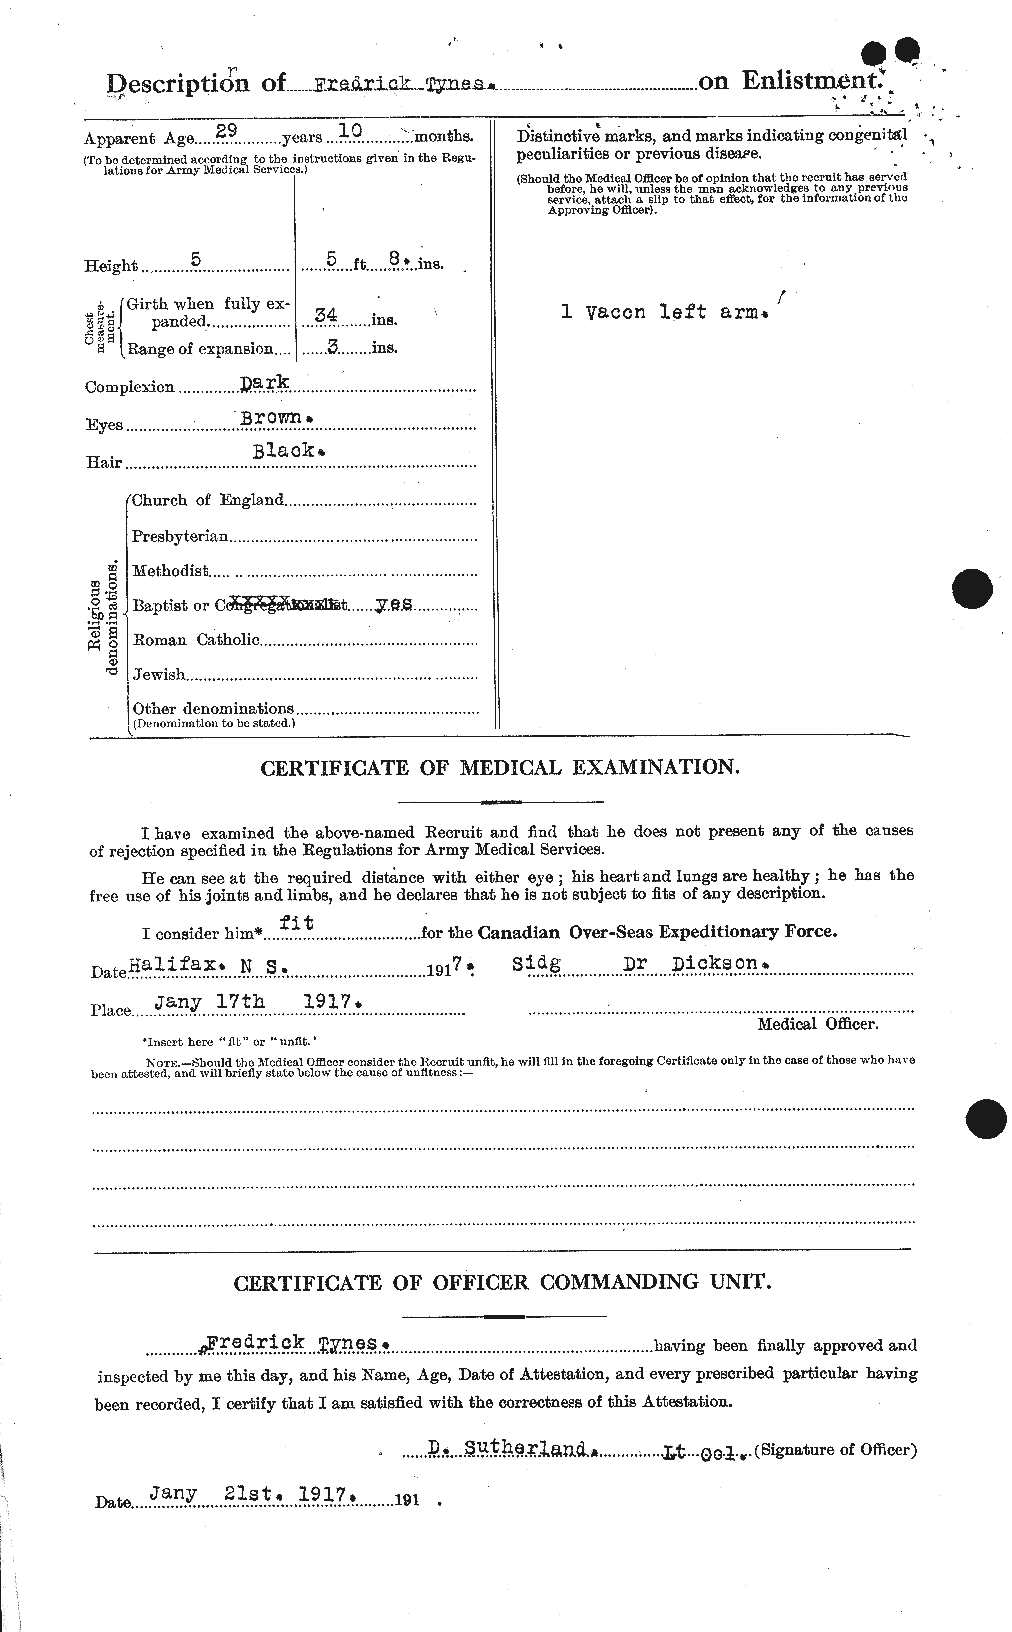 Dossiers du Personnel de la Première Guerre mondiale - CEC 644537b